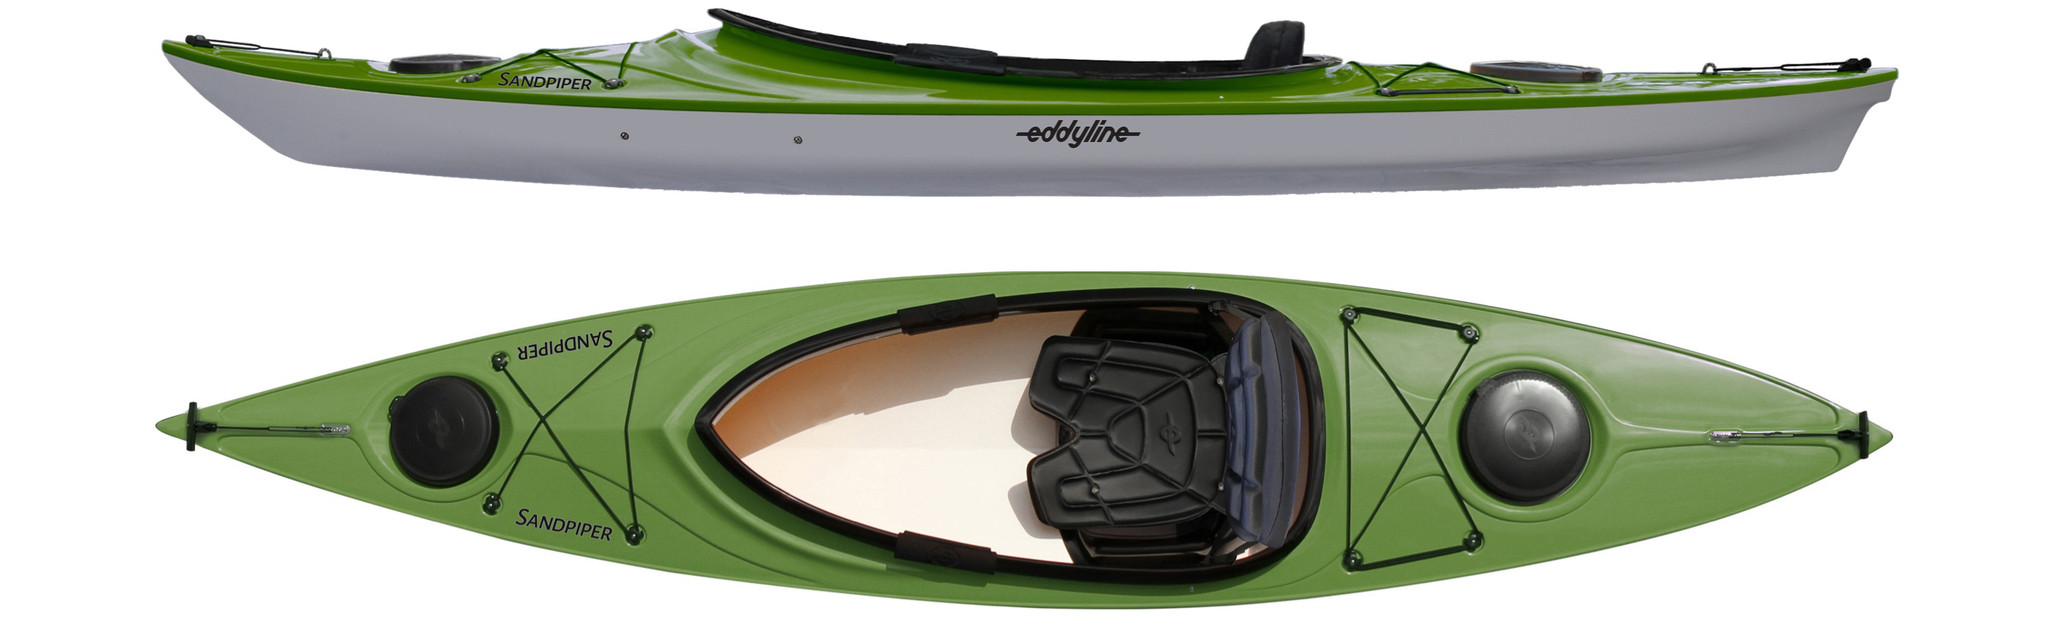 Eddyline Sandpiper 120 Kayak